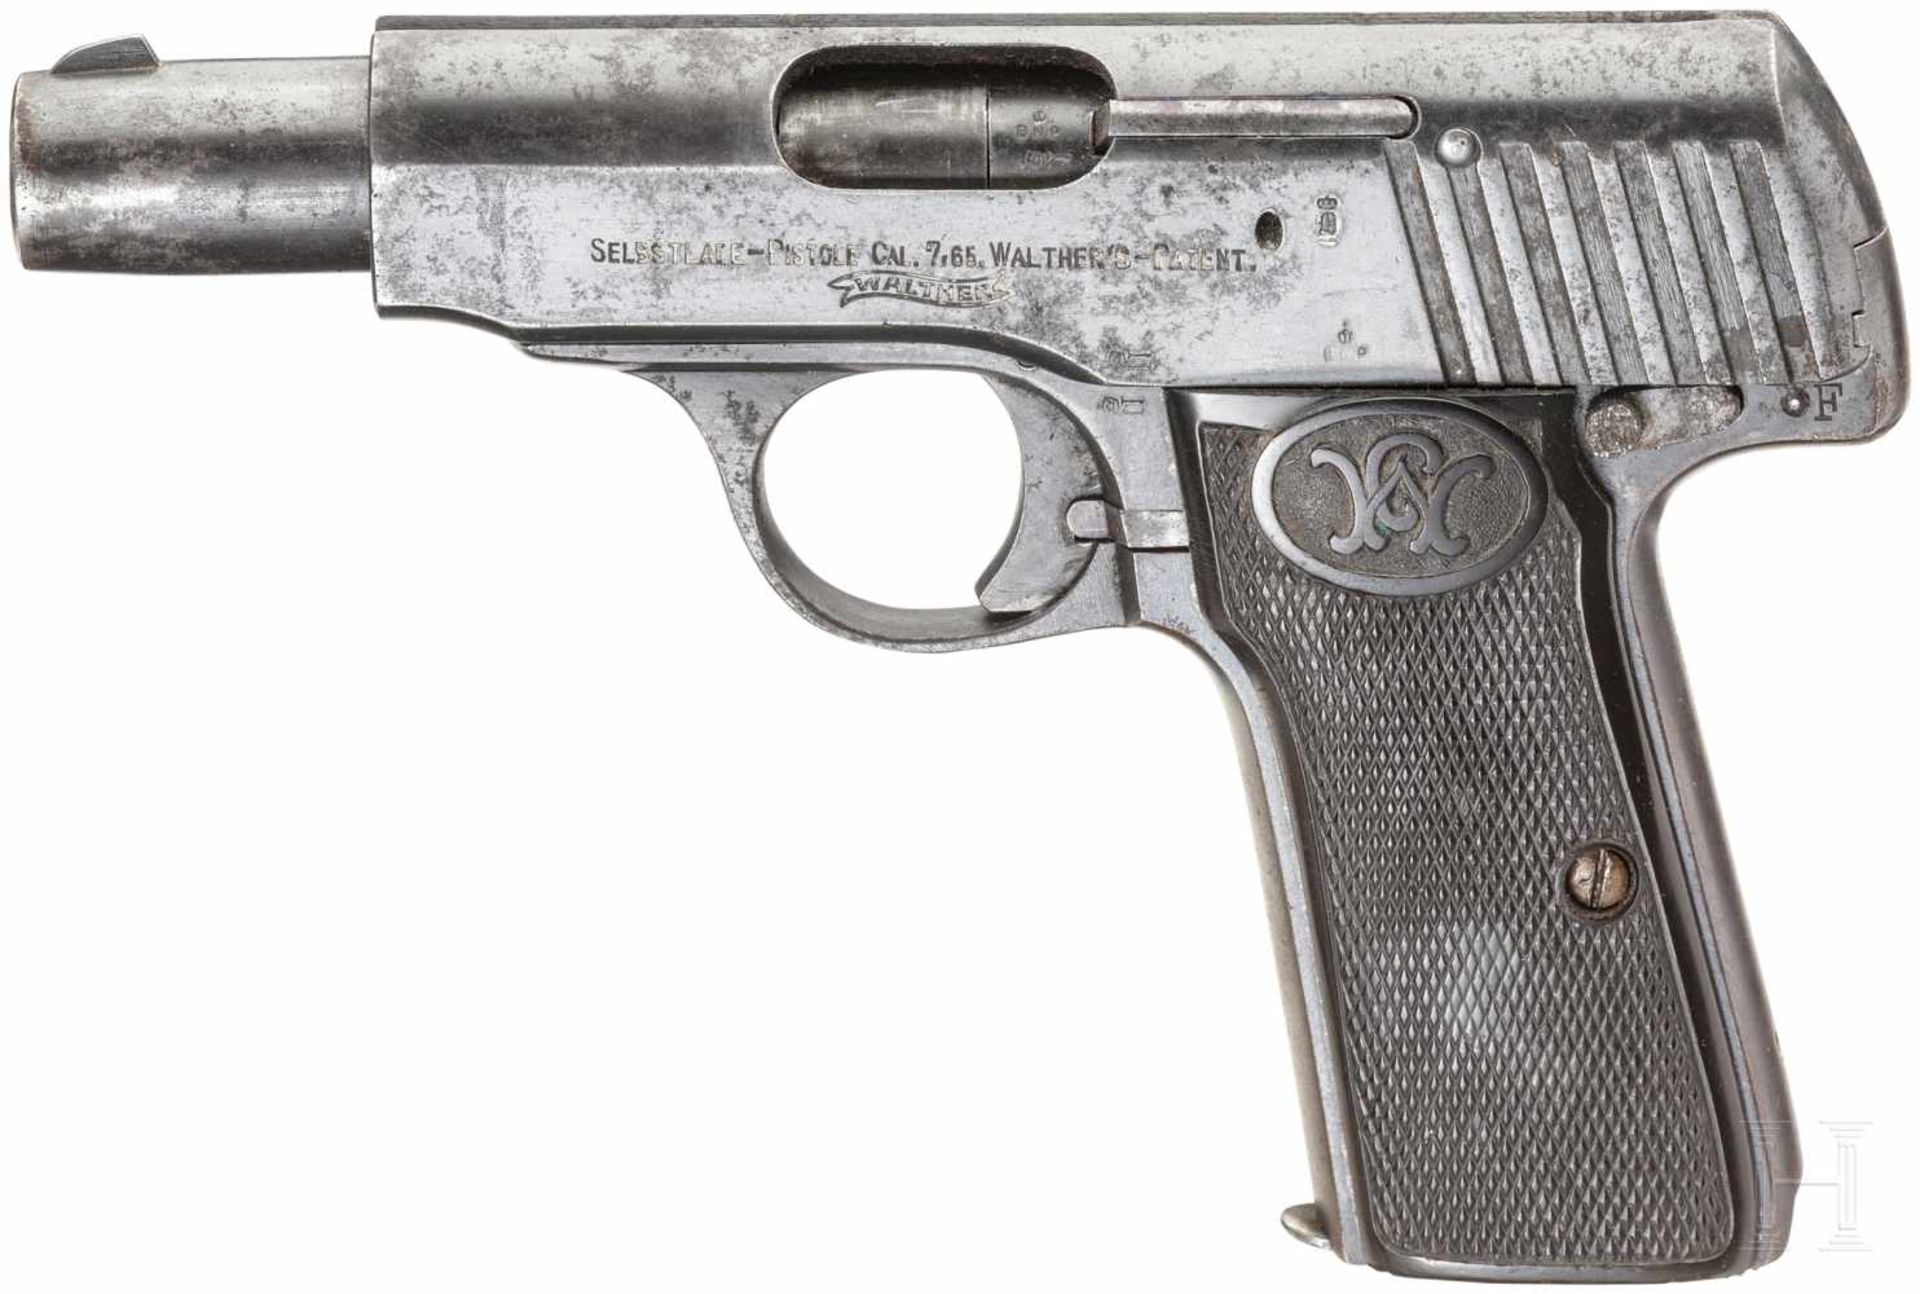 Walther Mod. 4, brit. Beutewaffe, mit TascheKal. 7,65 mm Brown., Nr. 55927, Nummerngleich. Guter